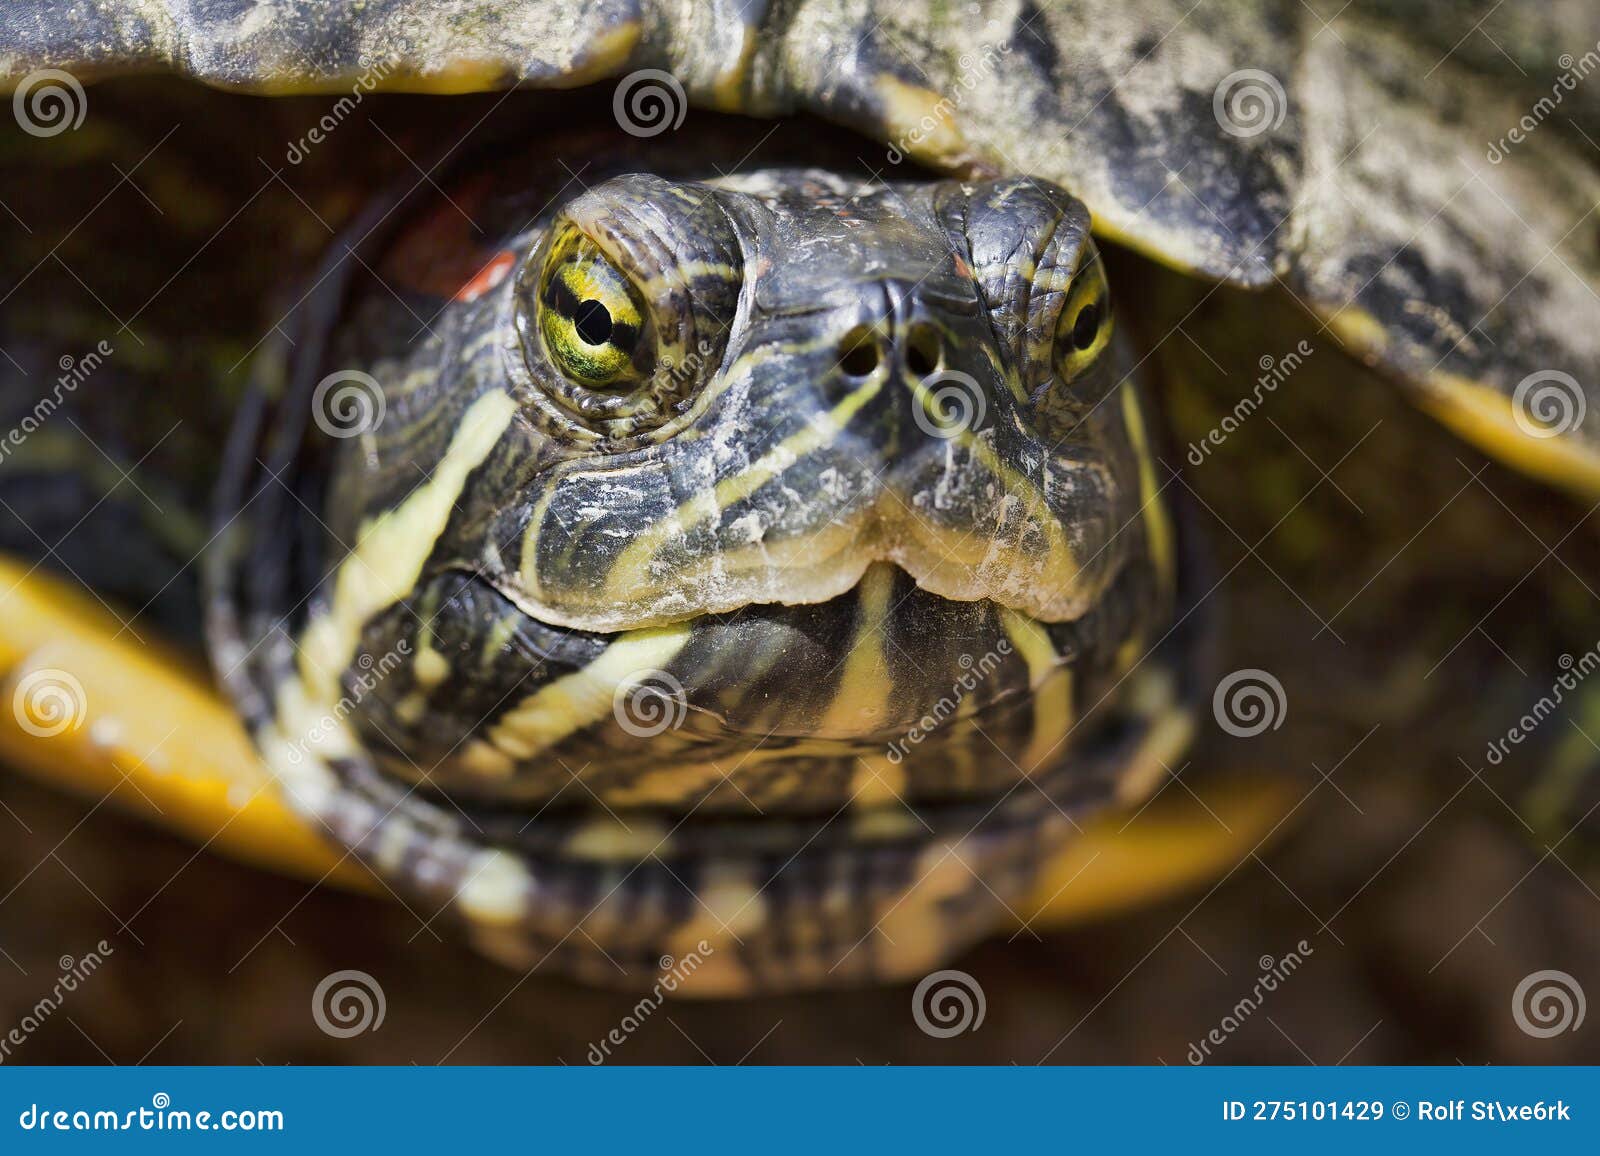 龟 龟头 乌龟 - Pixabay上的免费照片 - Pixabay